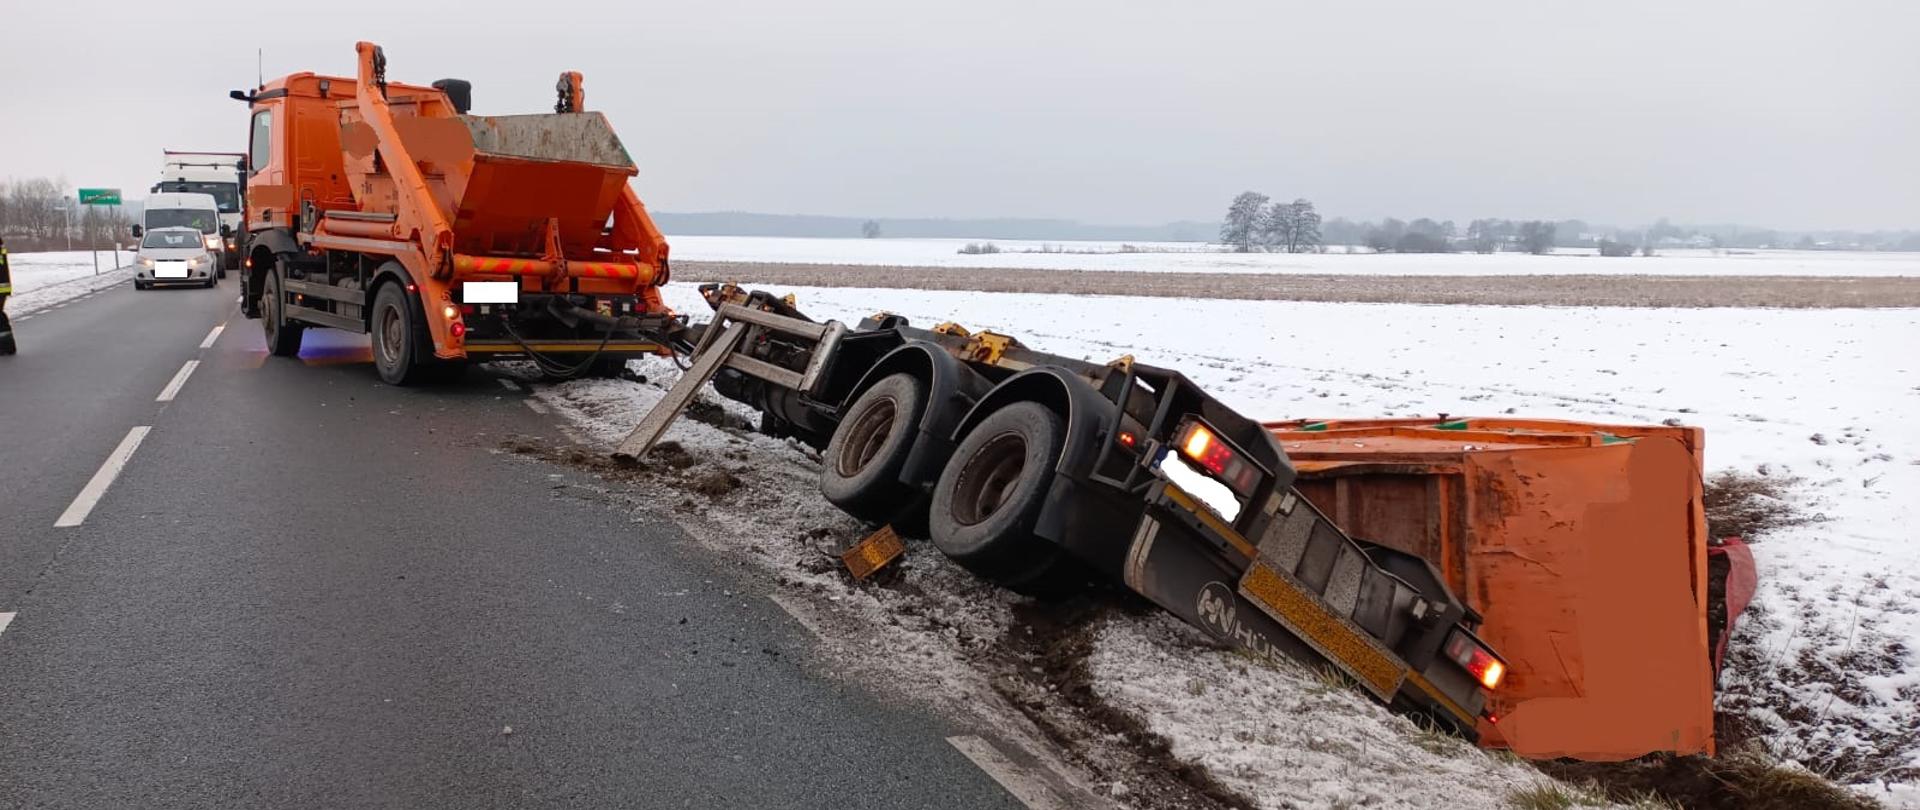 Widać samochód ciężarowy na drodze, który blokuje pas ruchu, przyczepa jest w rowie, kontener z przyczepy też w rowie, w około widać śnieg na polu